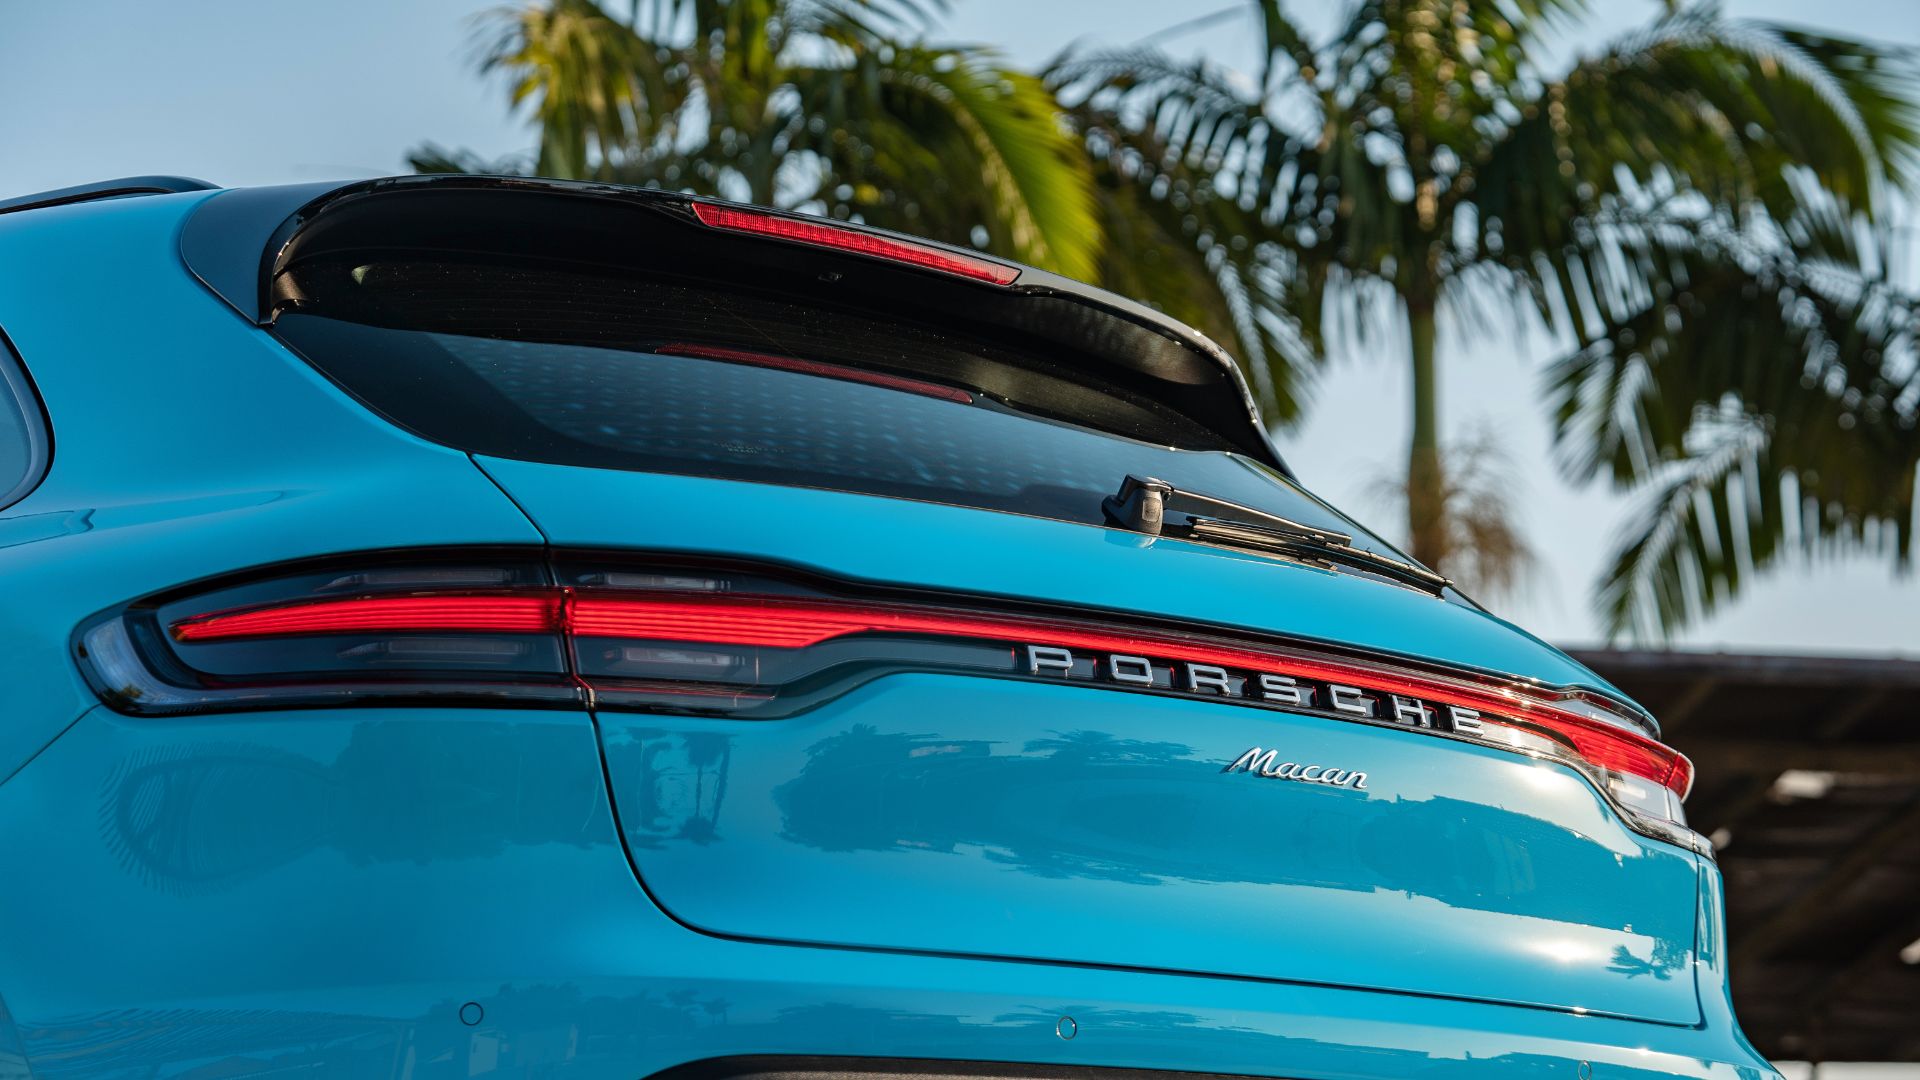 Testamos: Porsche Macan, o carro de entrada da marca alemã no Brasil -  Opinião - InfoMoney